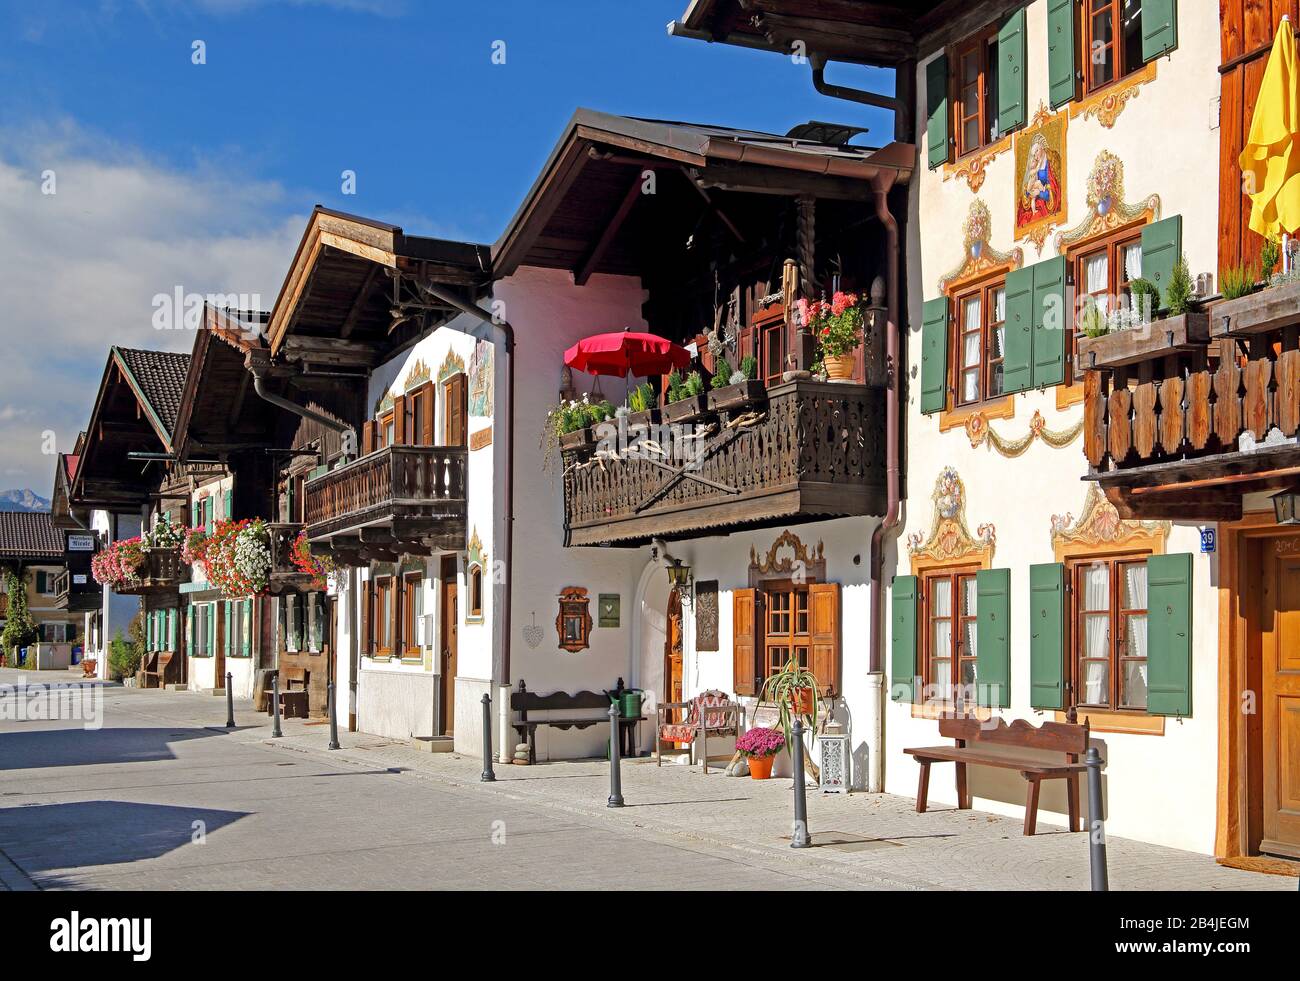 Traditional Upper Bavarian villas with flower balconies, Garmisch-Partenkirchen, Werdenfelser Land, Upper Bavaria, Bavaria, Germany Stock Photo